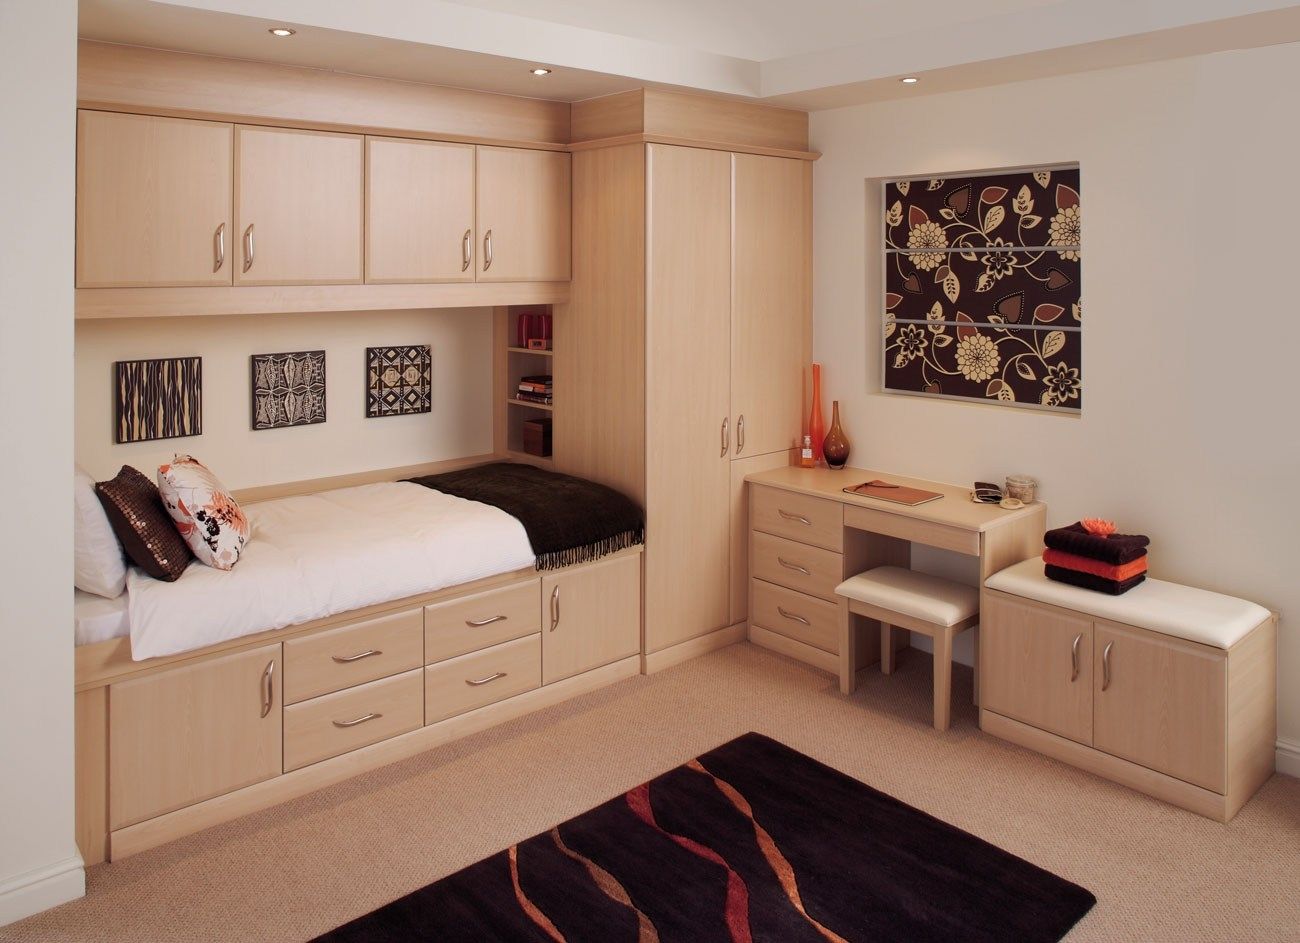 Bedroom Bespoke Built In Fitted Wardrobe Mirrored Dark Wood Regarding Bespoke Built In Furniture (View 5 of 15)